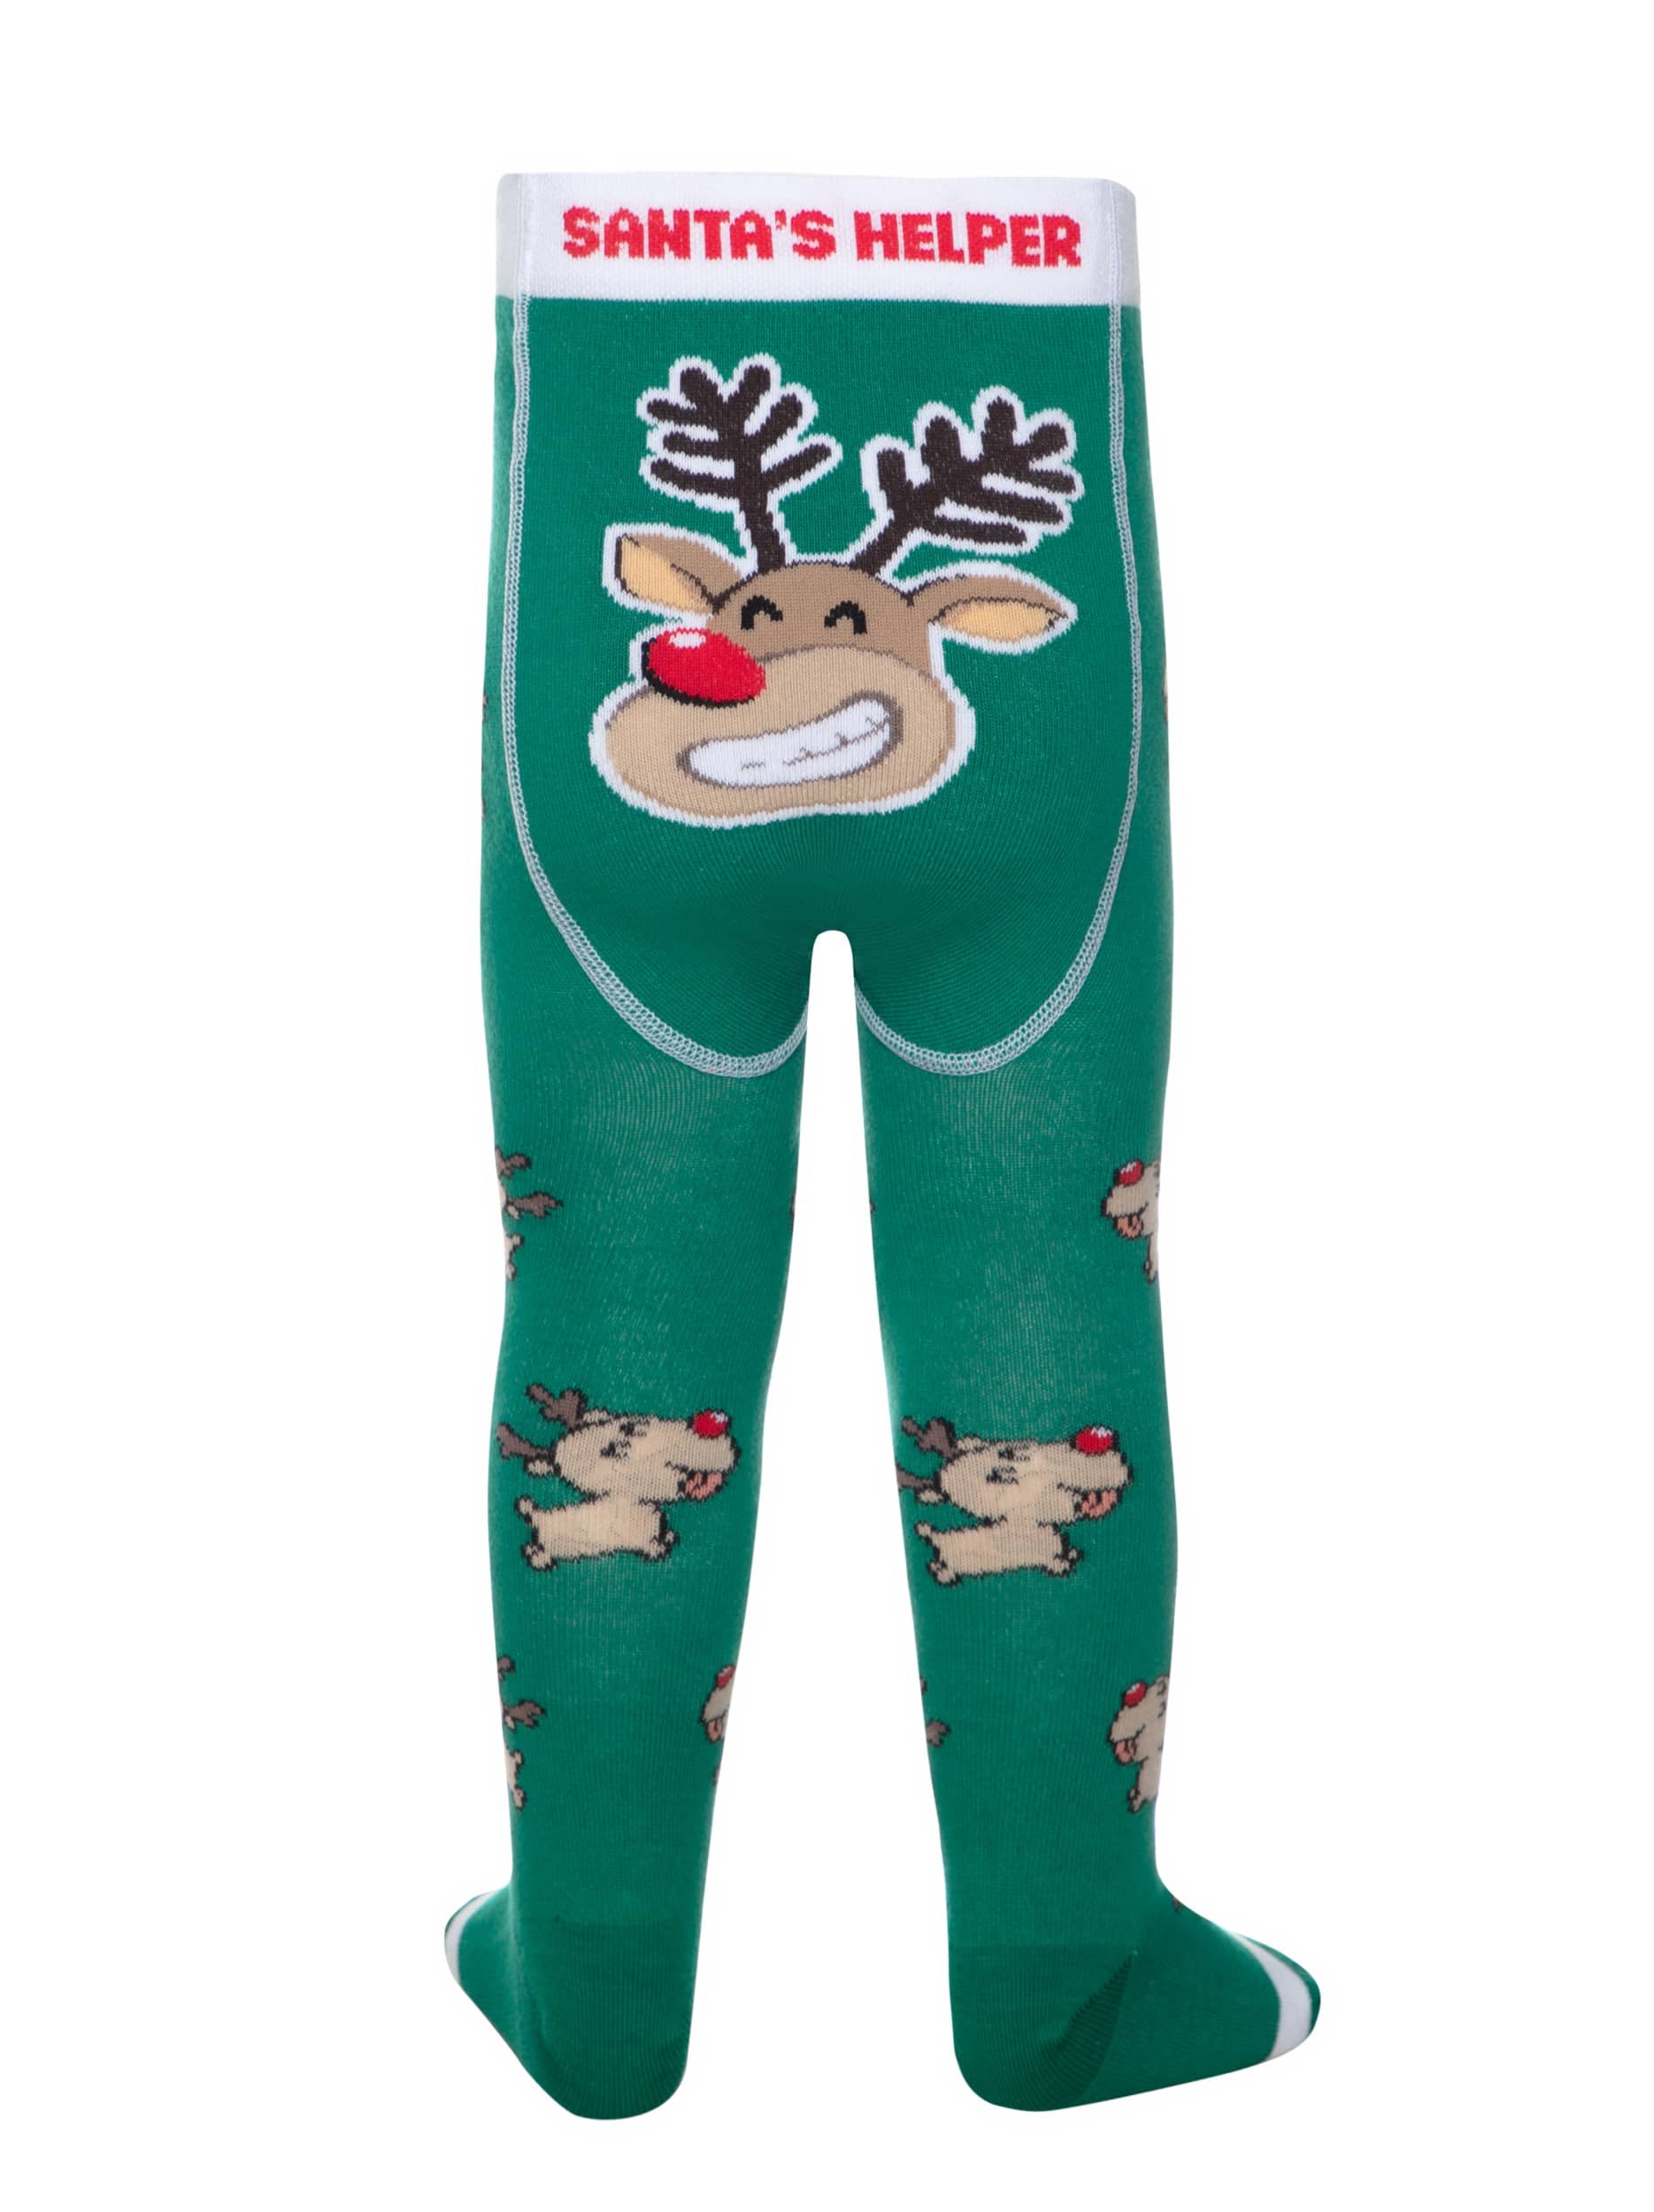 Otroške hlačne nogavice z božičnim vzorcem SANTA'S HELPER